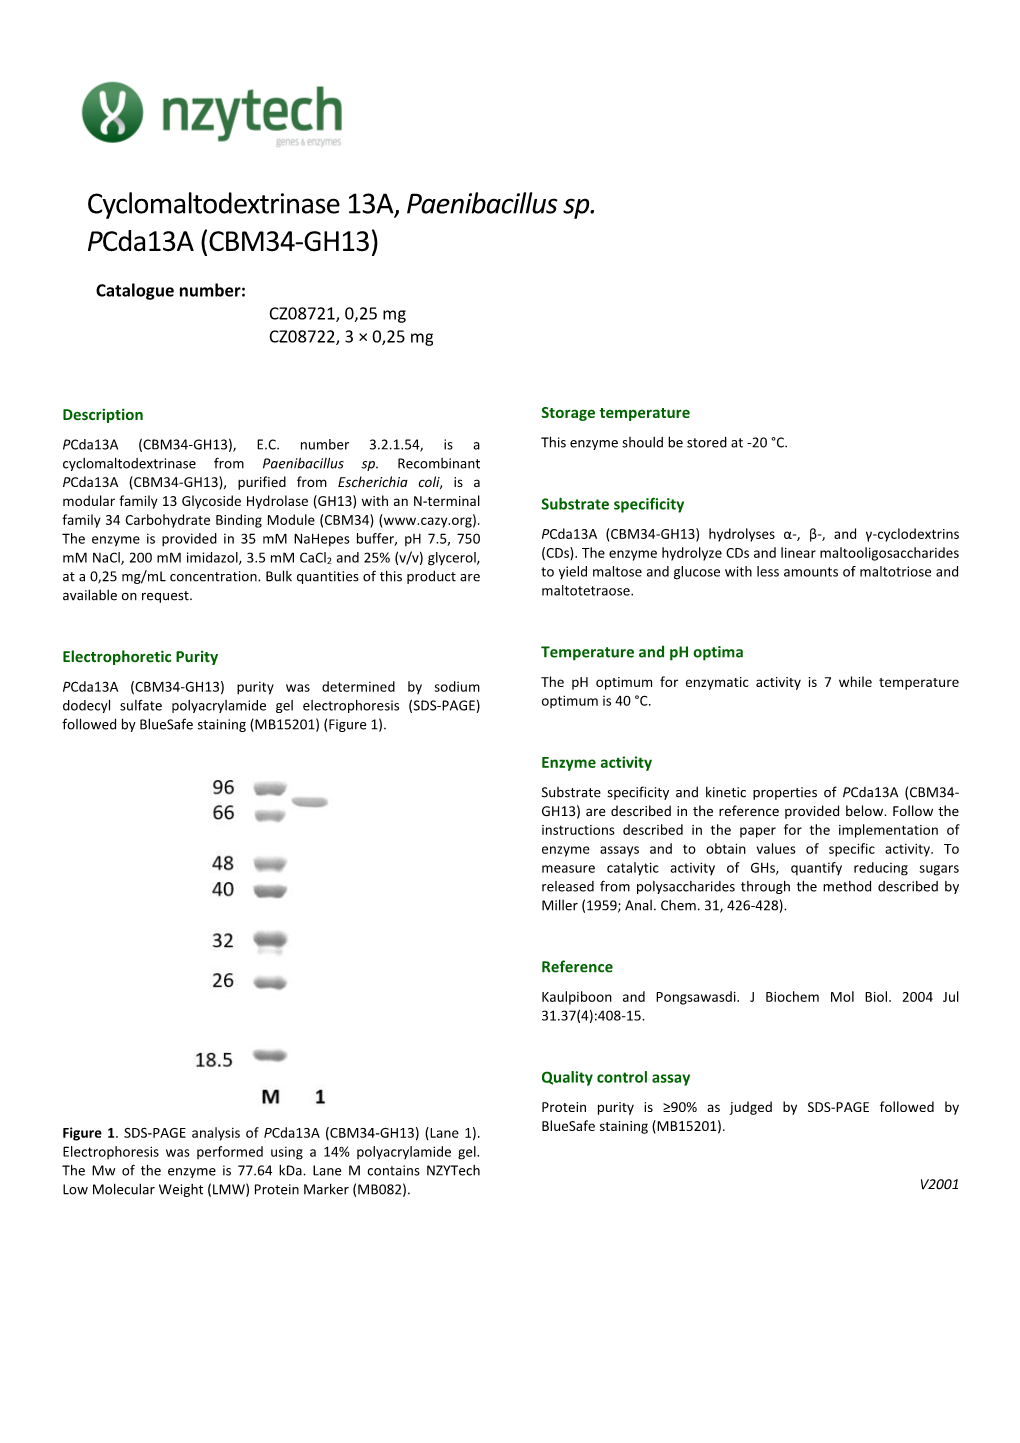 Cyclomaltodextrinase 13A, Paenibacillus Sp. Pcda13a (CBM34-GH13)